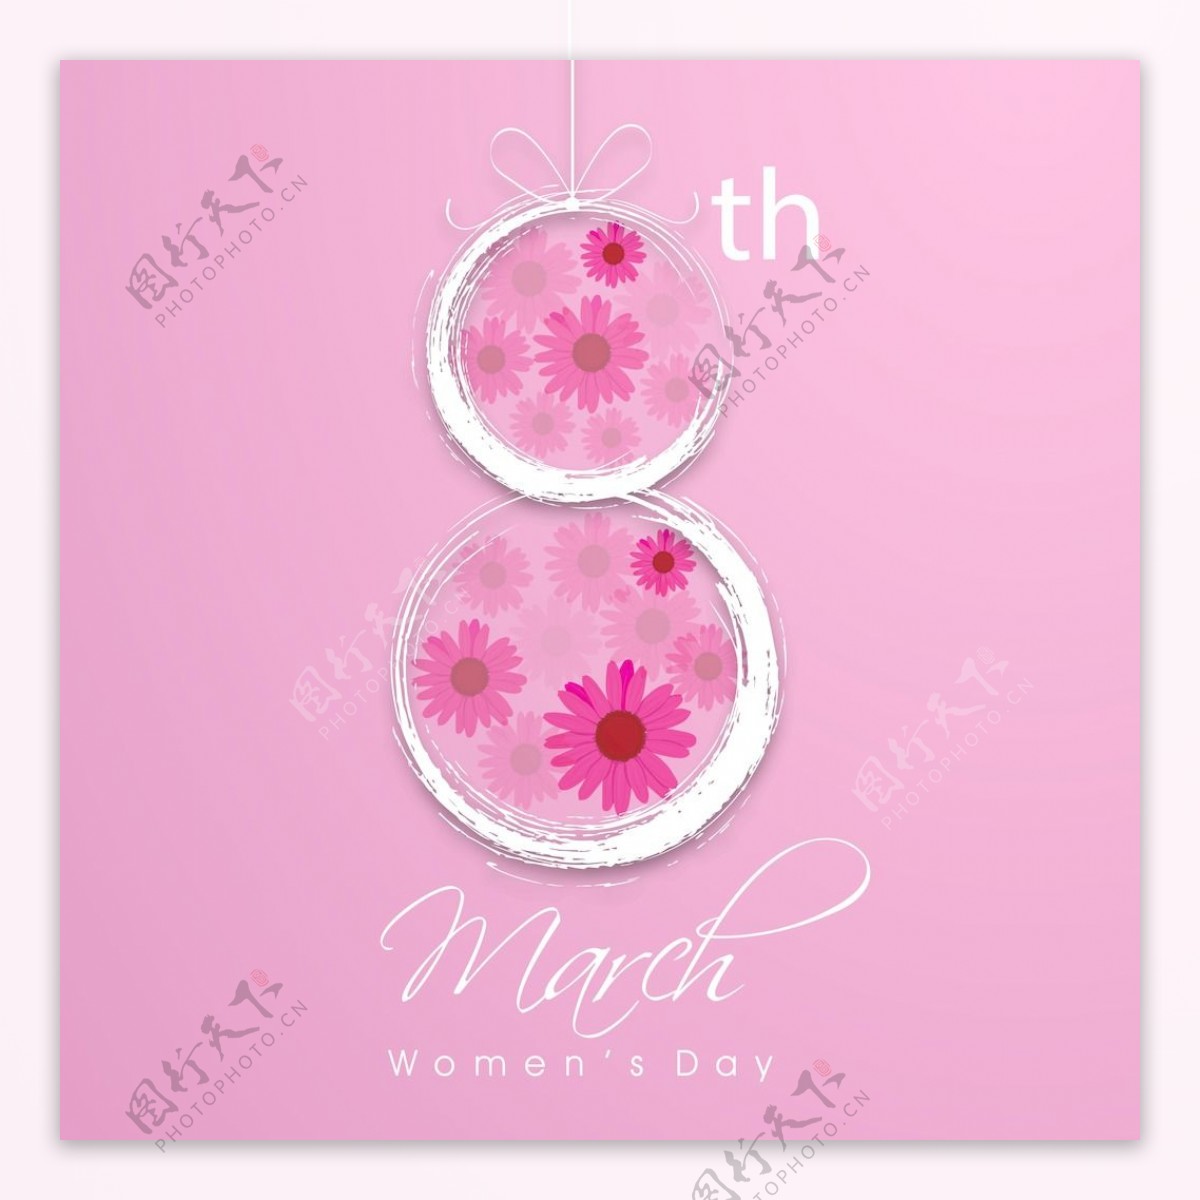 三八妇女节庆祝贺卡设计